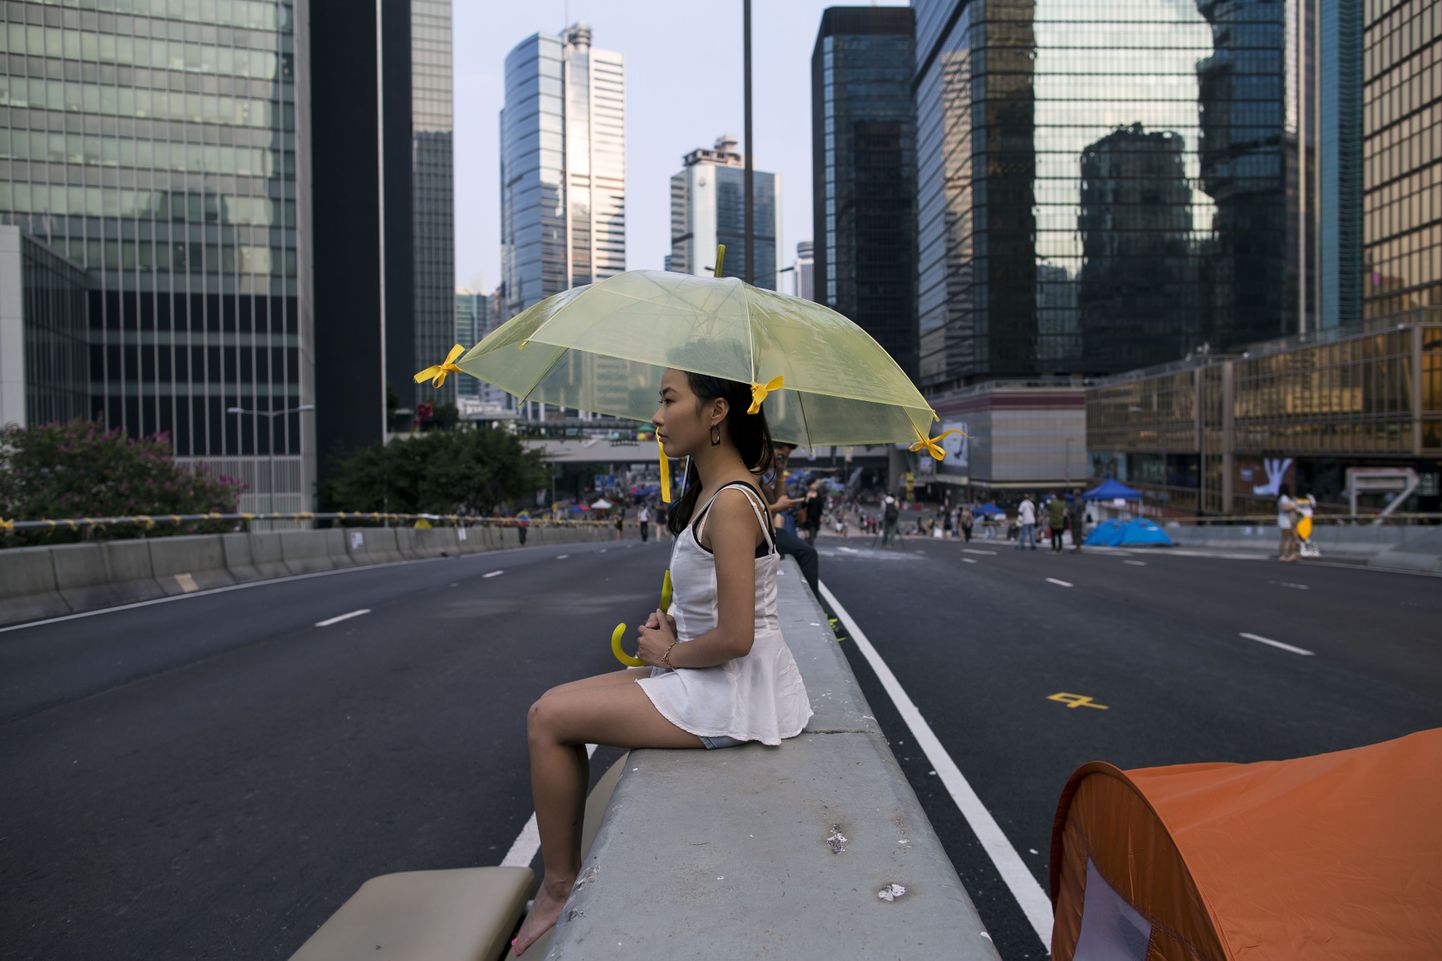 Tudengineiu, kes jätkab visalt protestiaktsiooni. Hongkongi meeleavaldusi kutsutakse vihmavarjurevolutsiooniks ning vihmavarjudest on saanud selle sümbol.